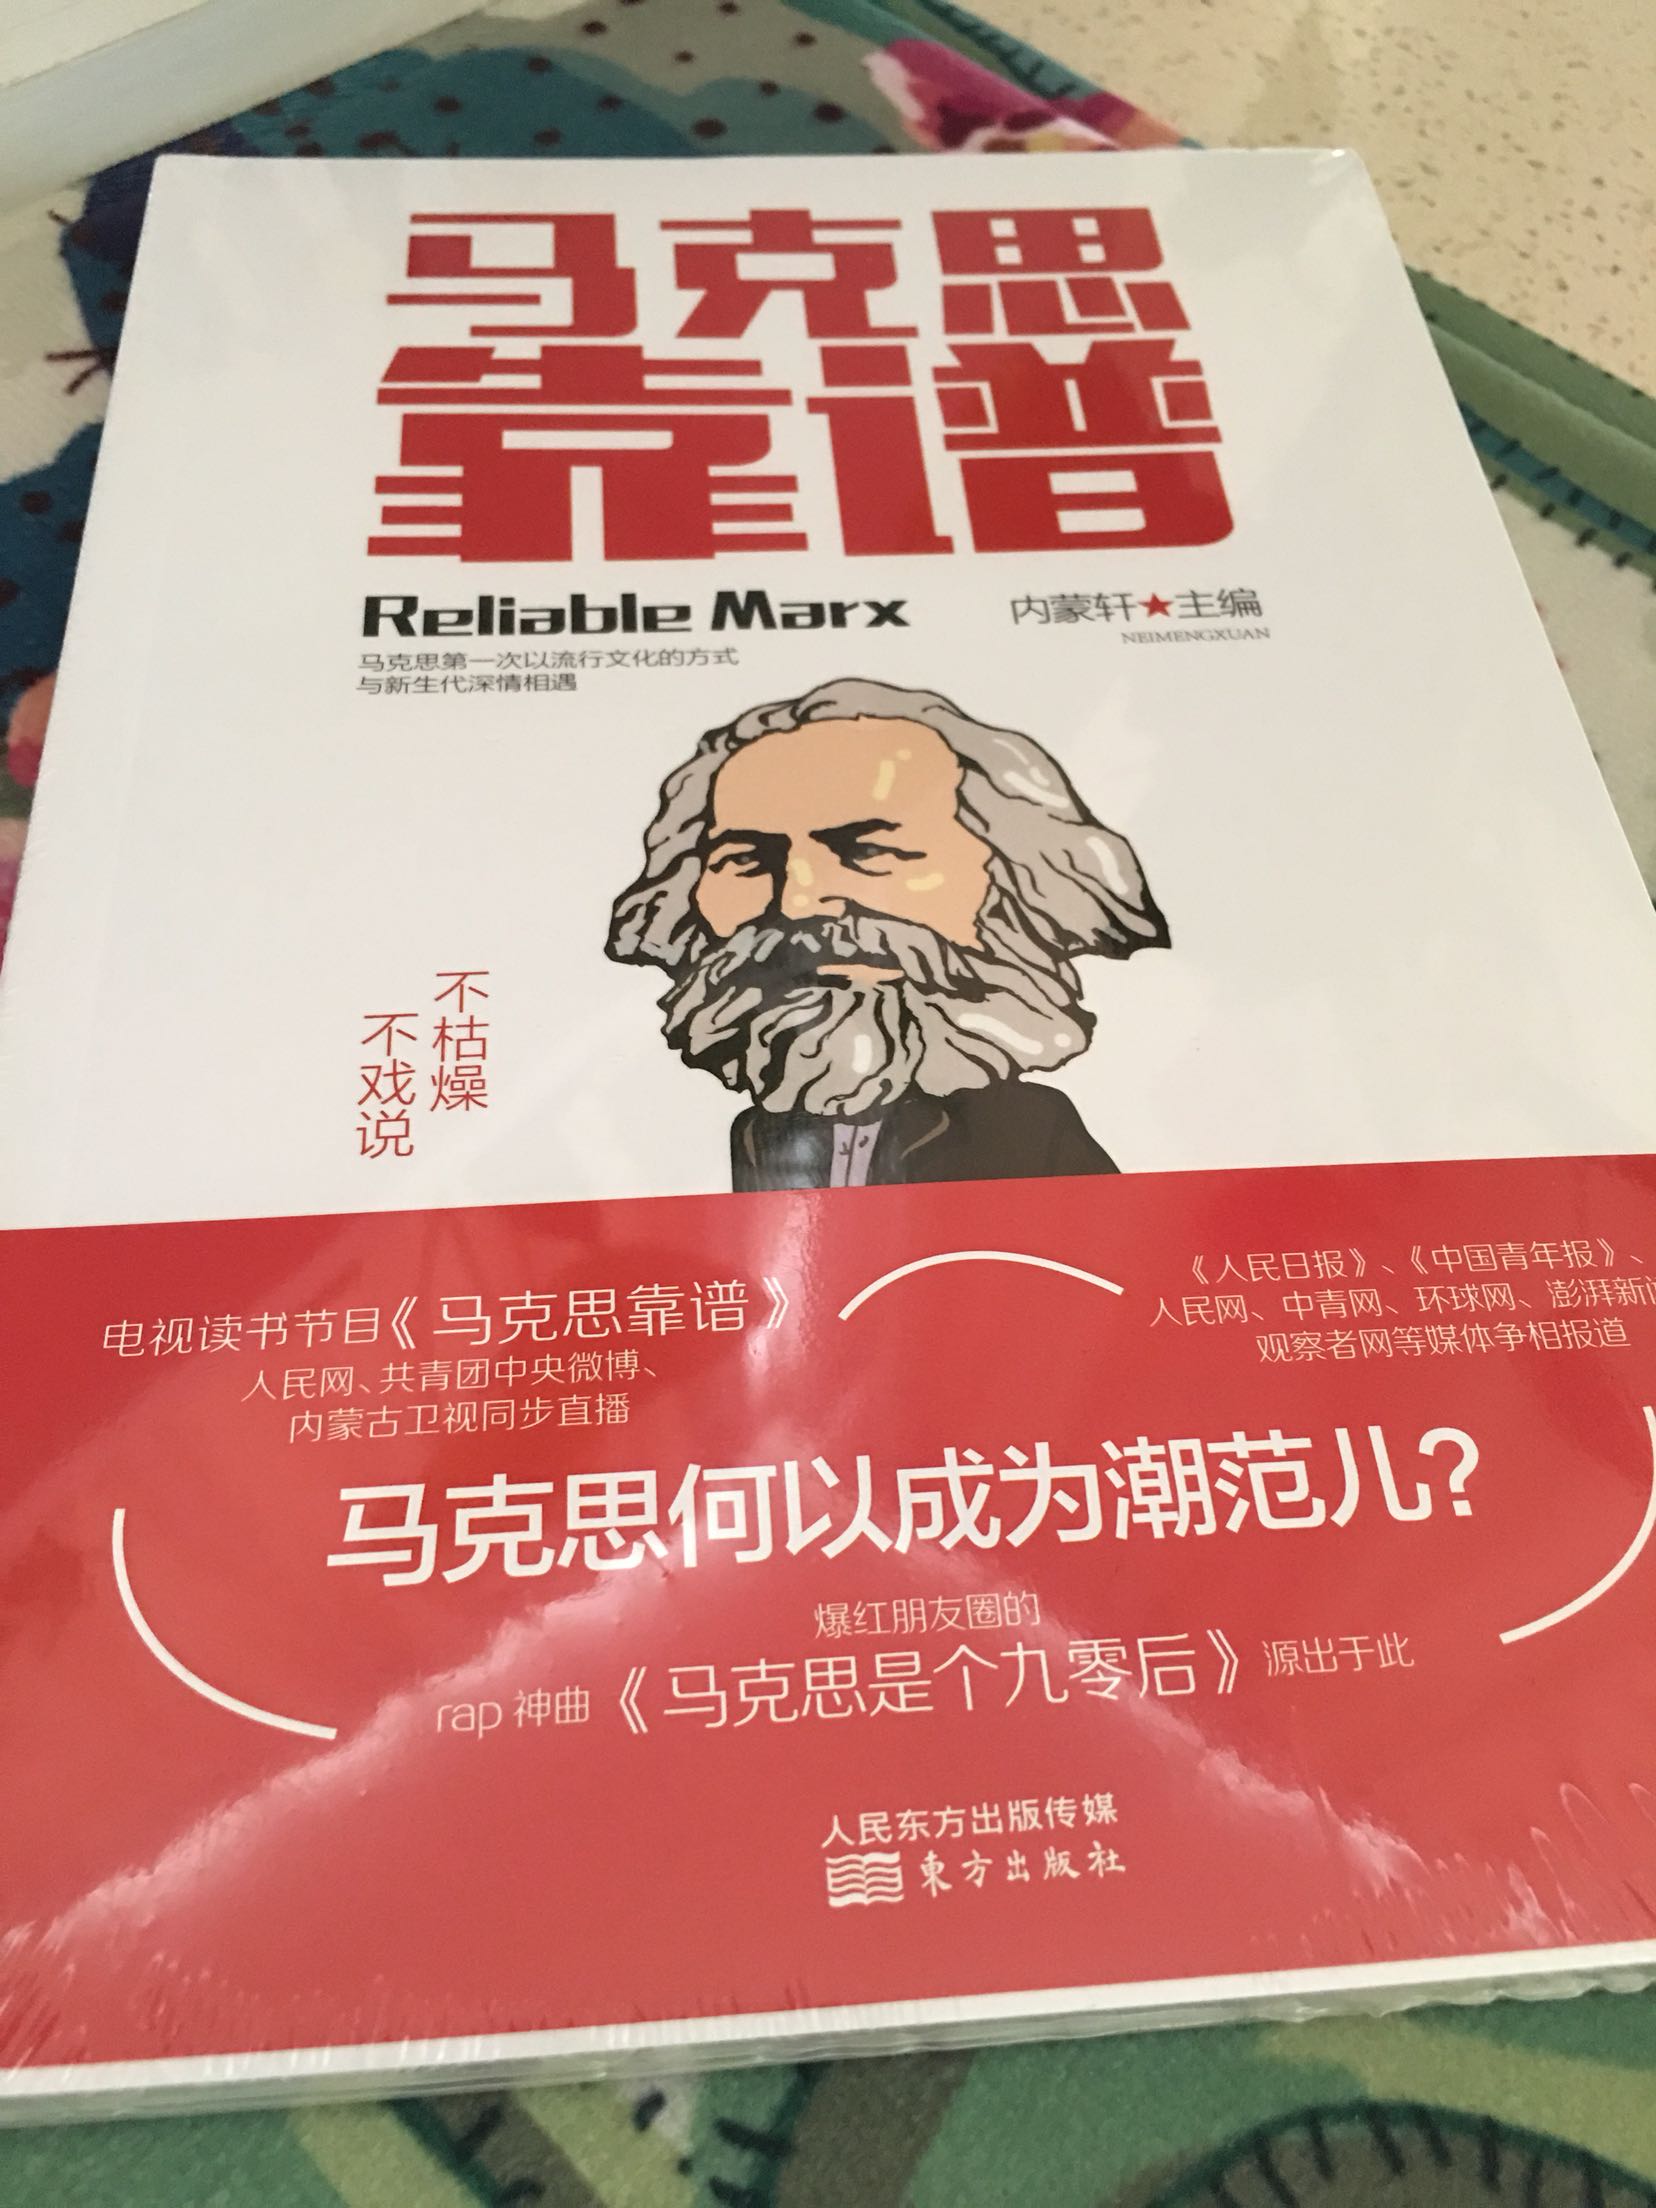 现在流行的讲故事方式：让马克思主义说中国话，让大专家说家常话。